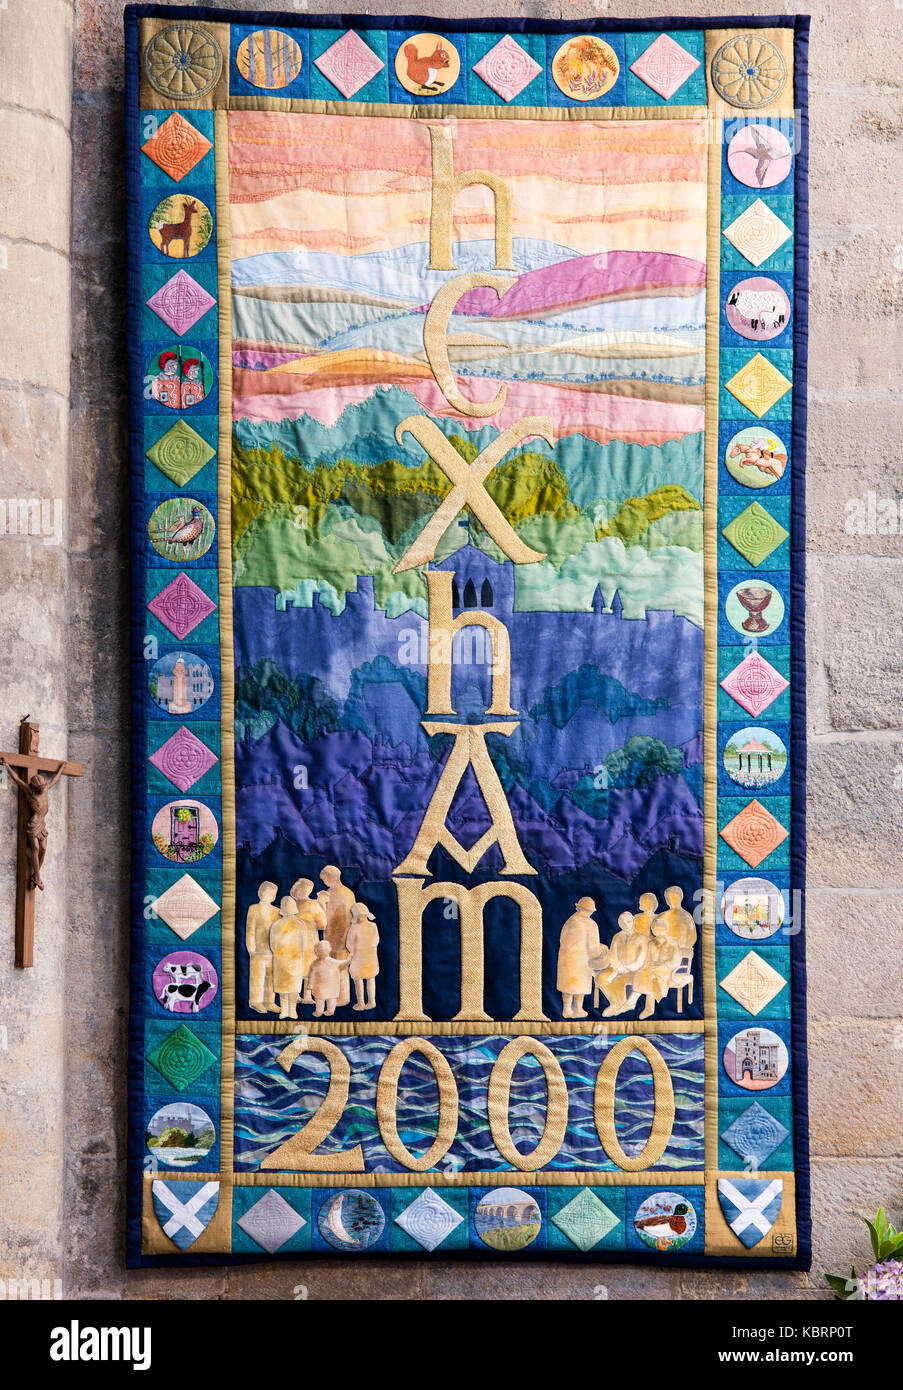 Une représentation symbolique de Hexham, son histoire et son mode de vie en 2000, à l'abbaye de Hexham, au Royaume-Uni Banque D'Images